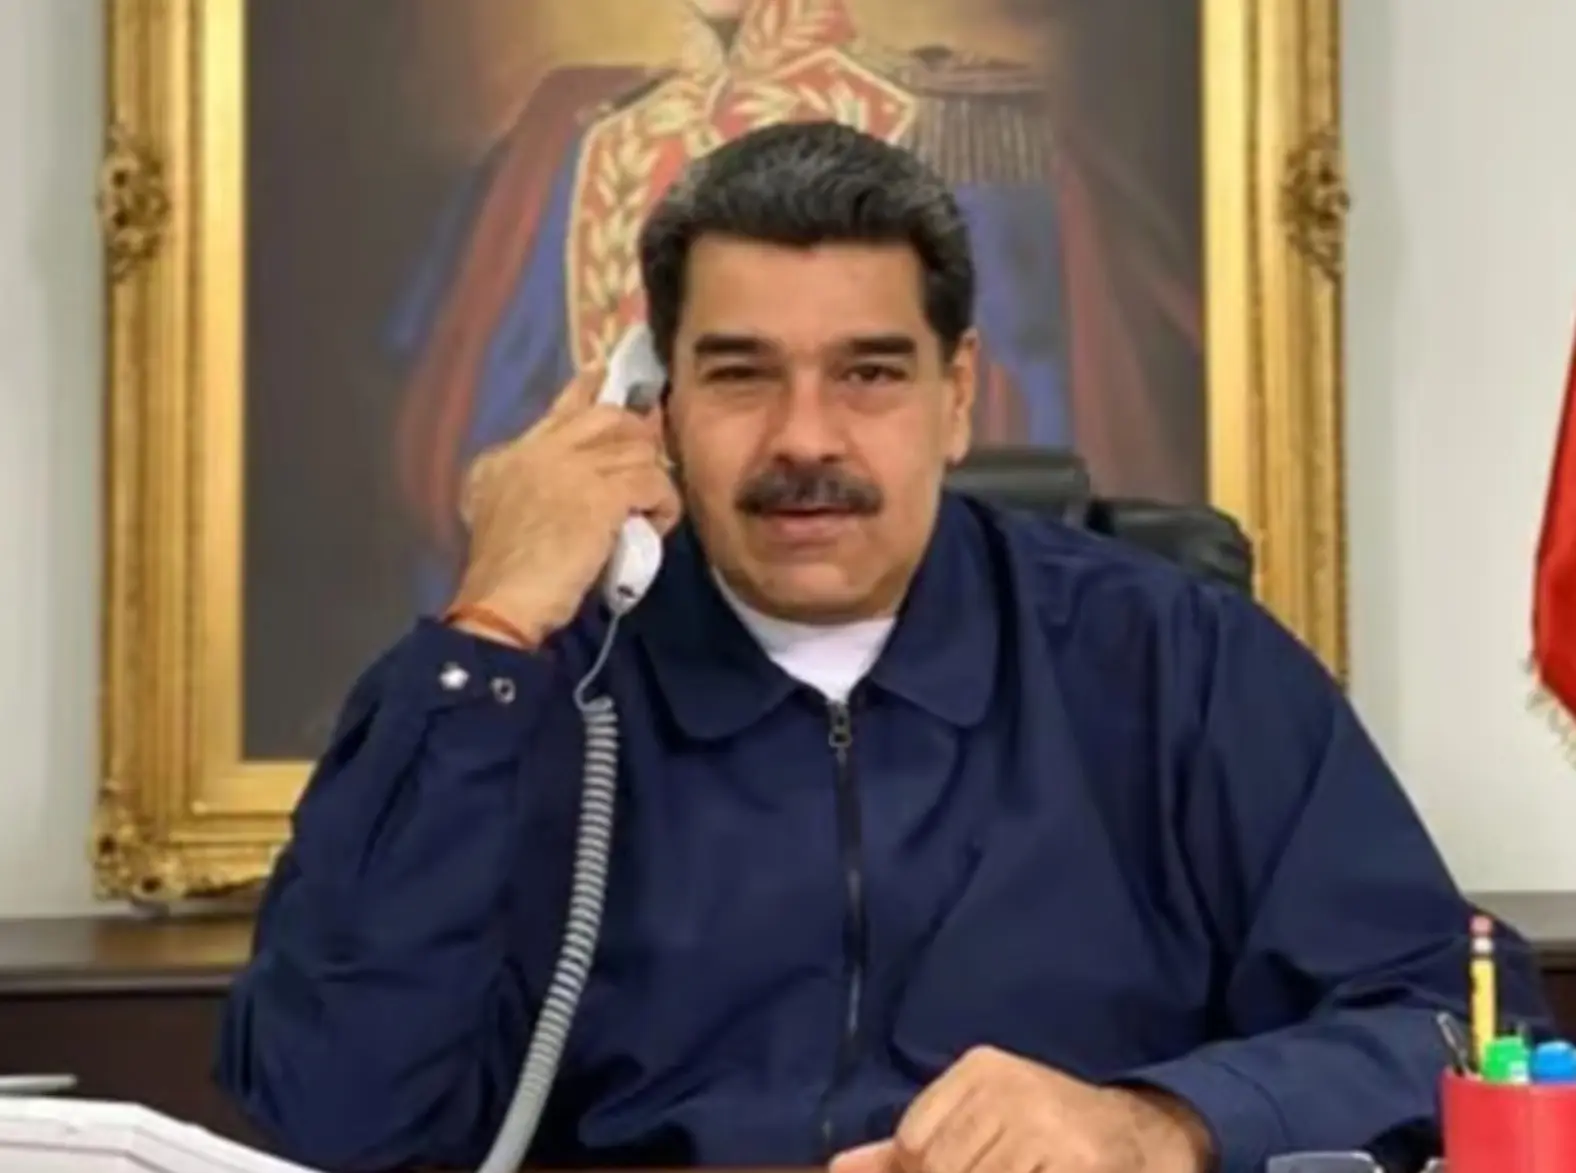 Crise na Venezuela: Os acordos de Barbados e a retórica de Maduro